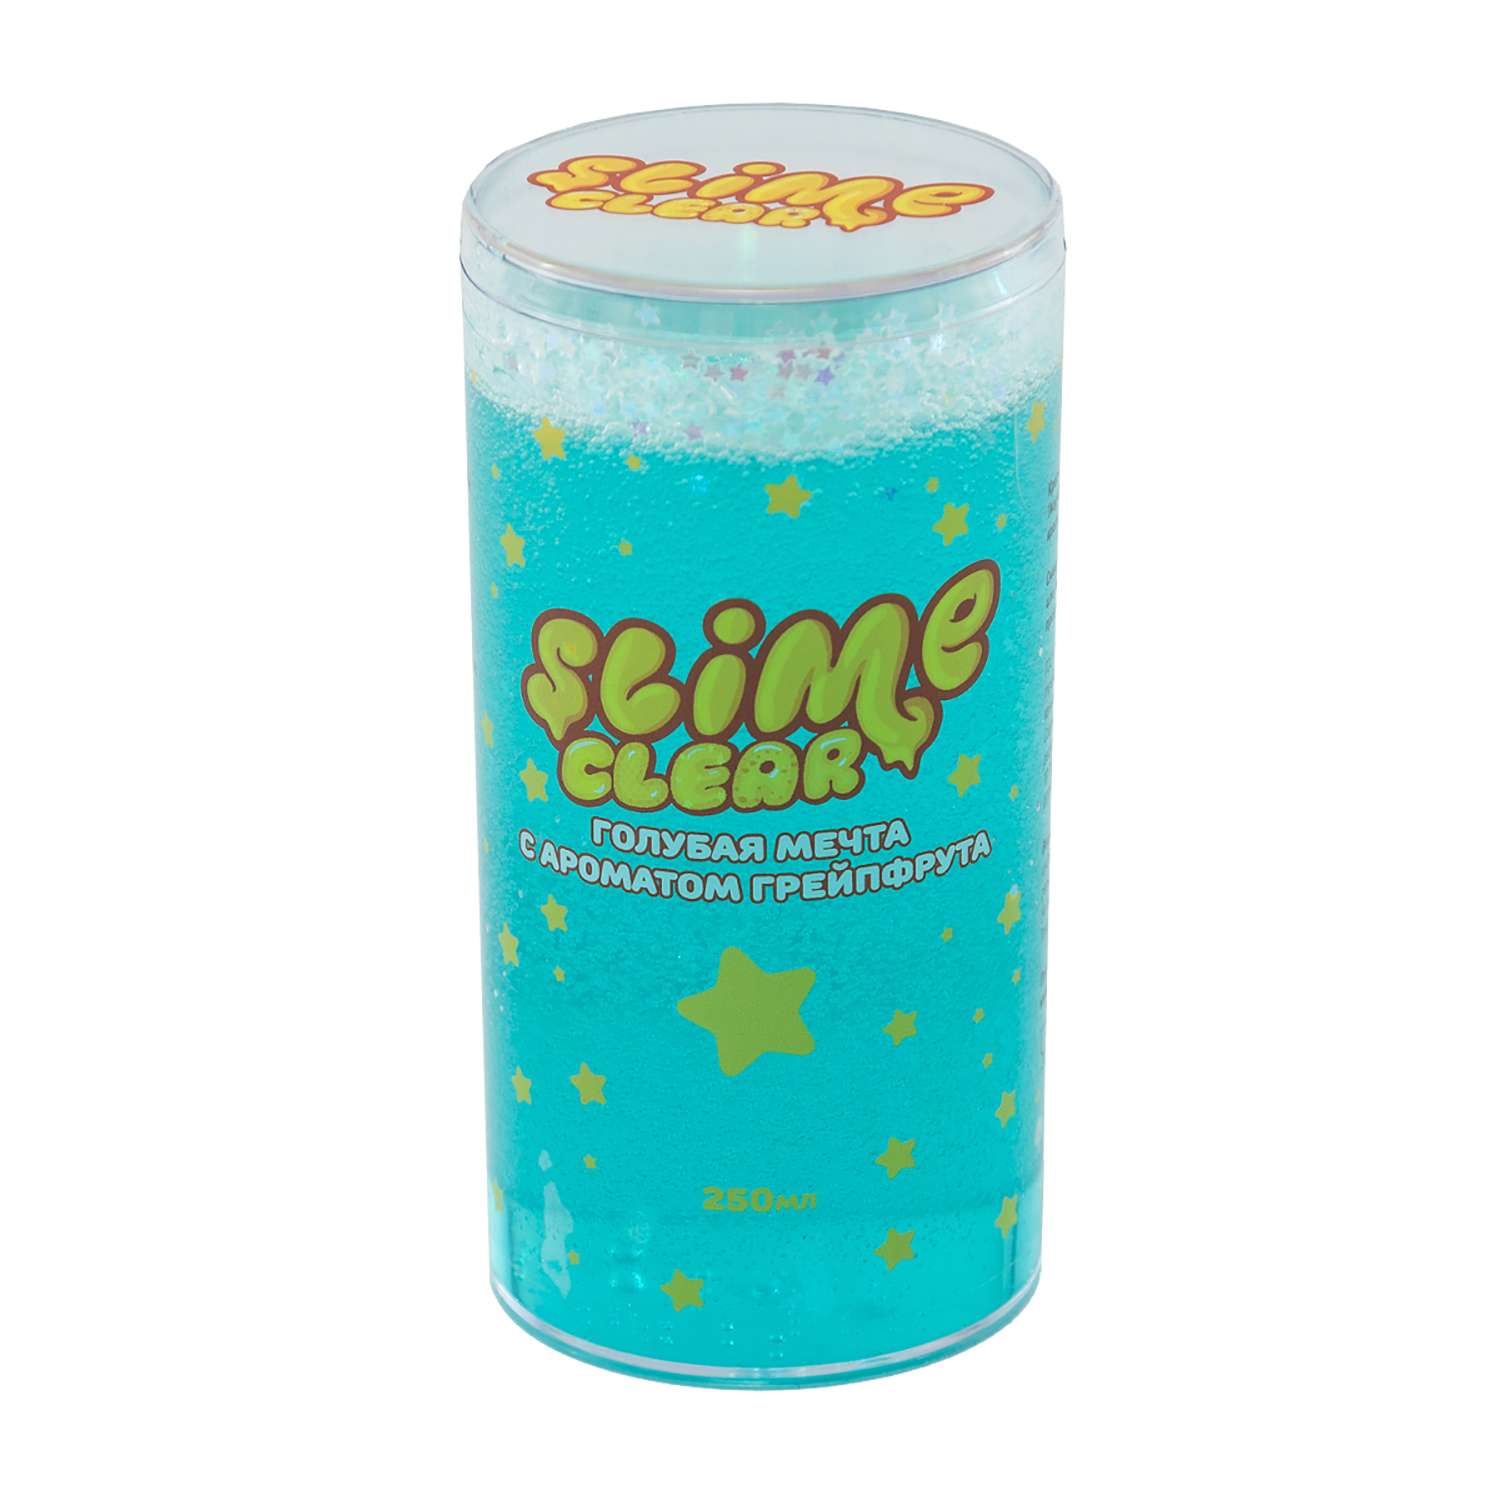 Лизун Slime Ninja Clear аромат грейпфрута 250г S130-33 - фото 1